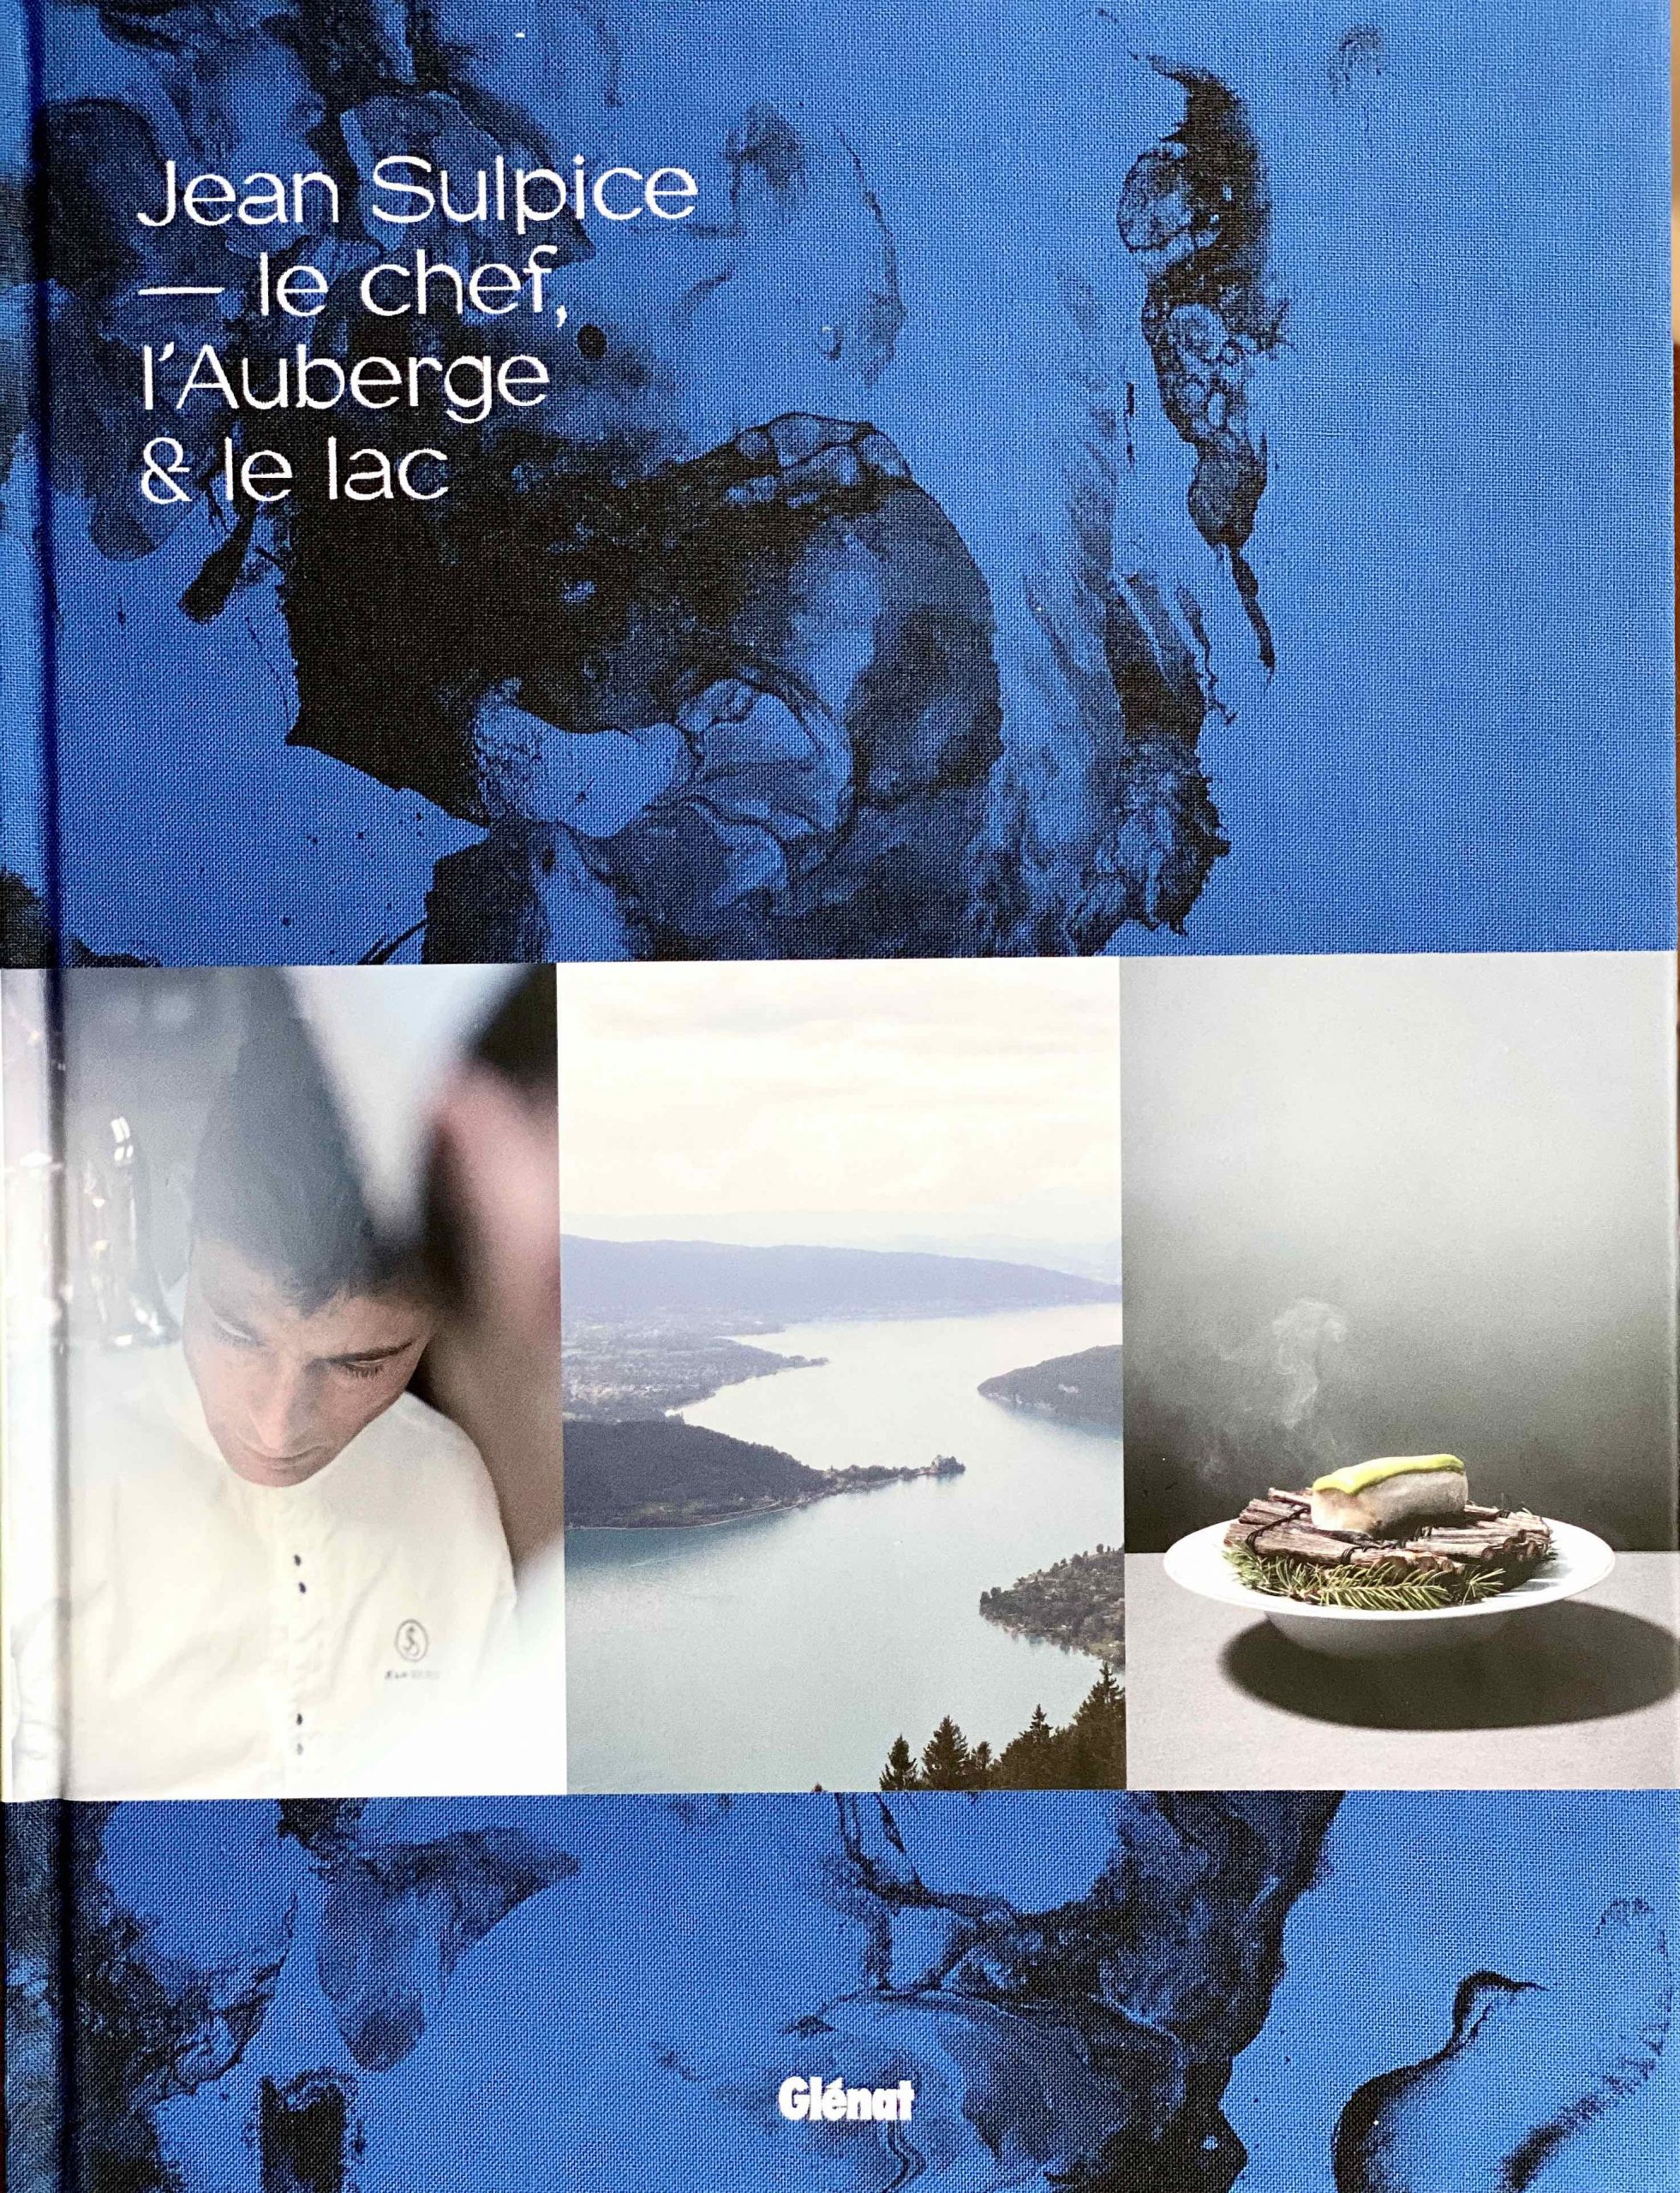 Jean Sulpice présente son livre " le chef, l’auberge et le lac" ©Sandrine Kauffer-Binz